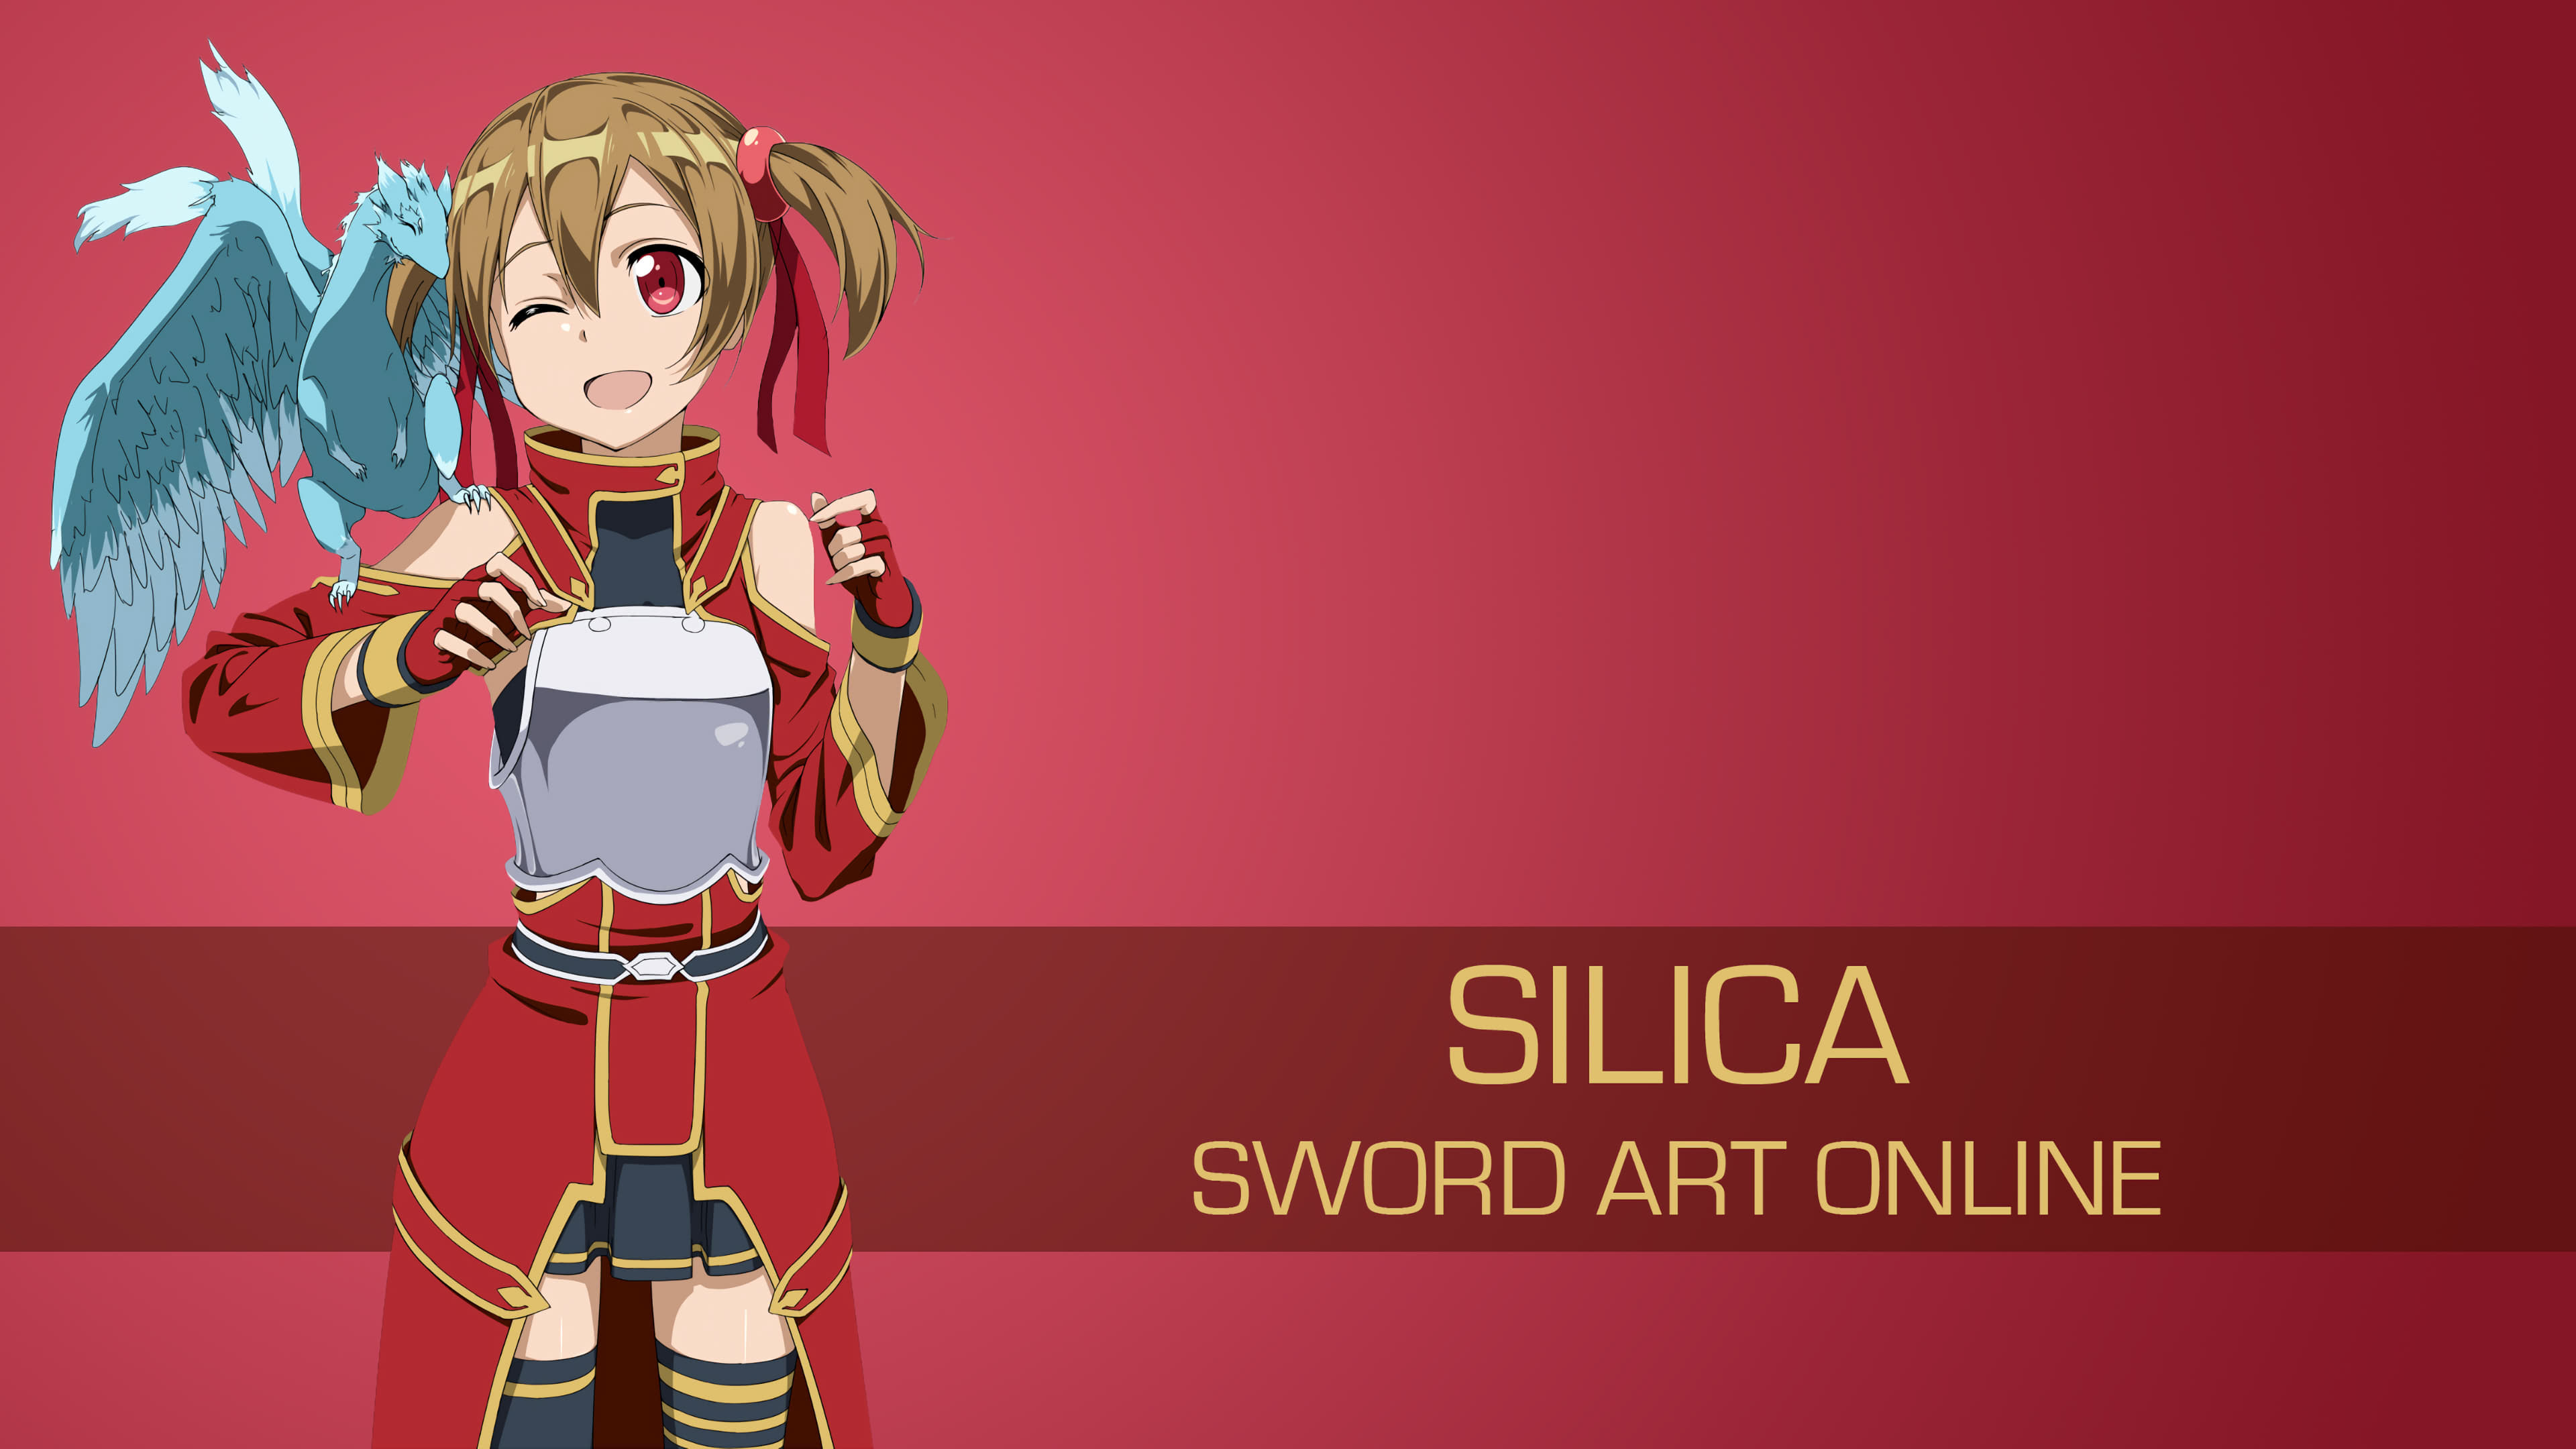 Silica Sword Art Online UHD 4K Wallpaper: Cùng chăm sóc và yêu quý những sinh vật lạ khác nhau trong Sword Art Online, Silica đã trở thành một trong những nhân vật được yêu thích nhất. Hãy cùng trang trí màn hình của bạn bằng bức ảnh UHD 4K đẹp mắt của cô ấy để tưởng nhớ những khoảnh khắc hấp dẫn trong Anime.